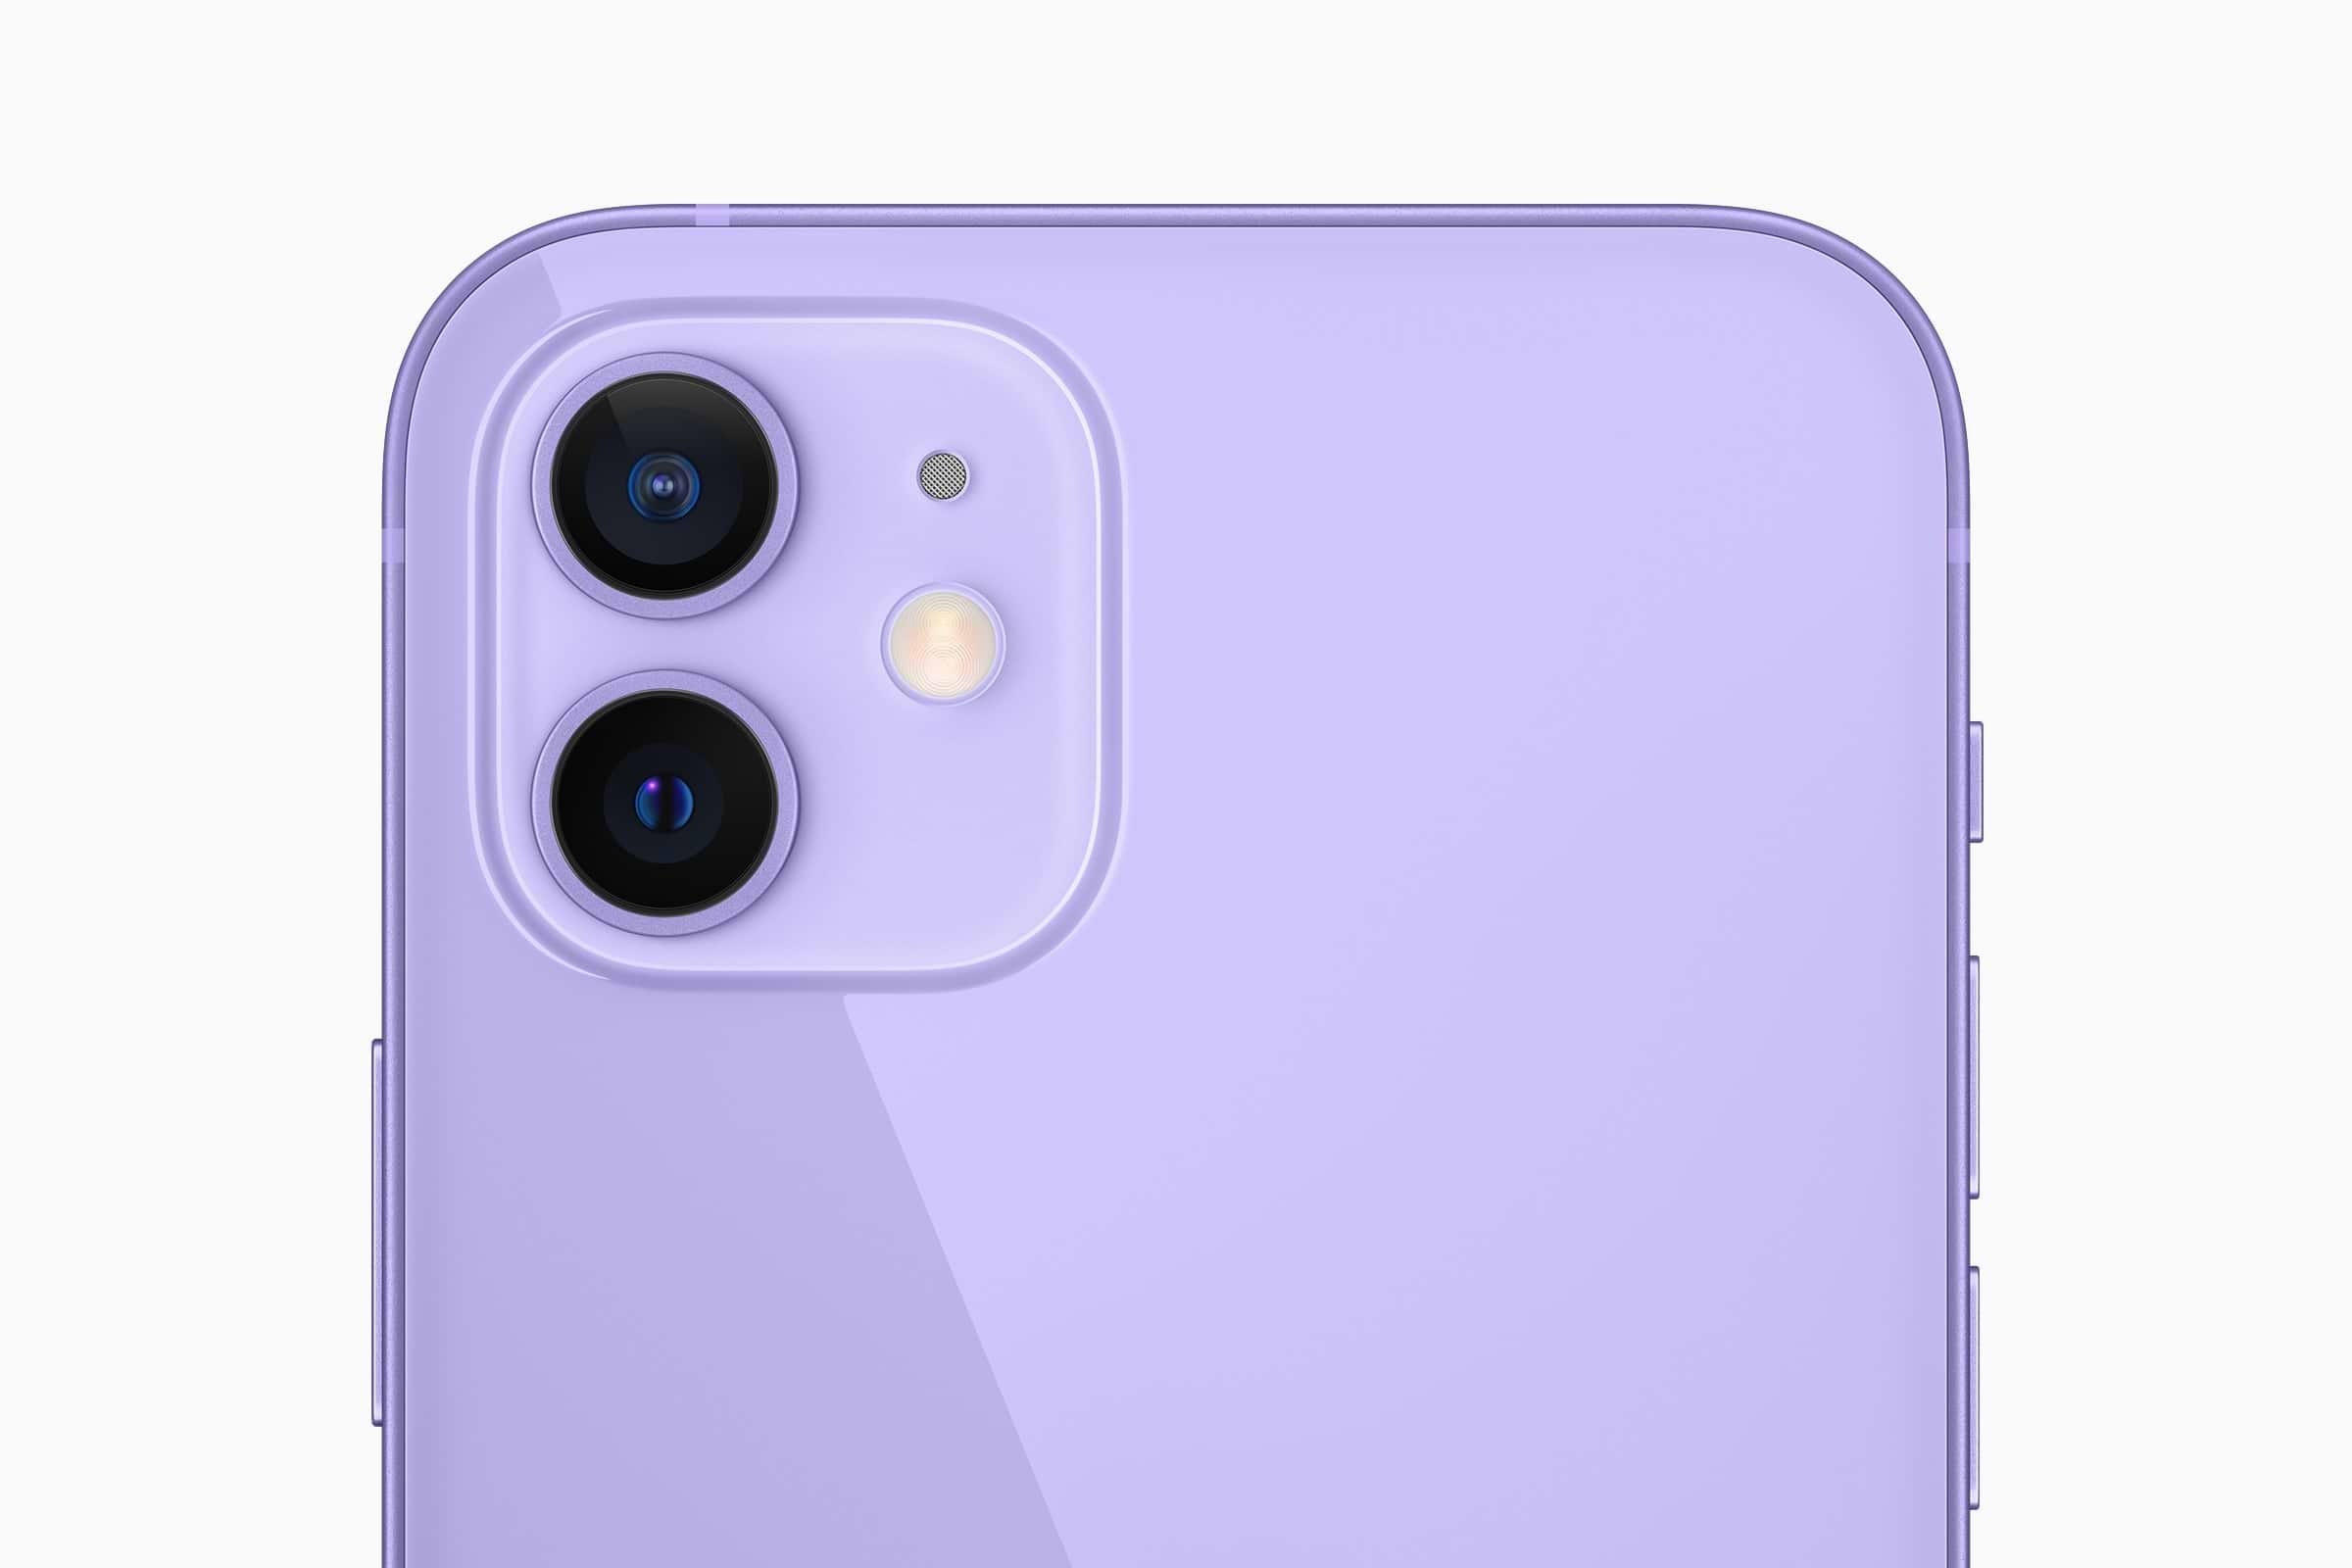 אייפון 12 ואייפון 12 מיני בצבע סגול עם מערך המצלמות